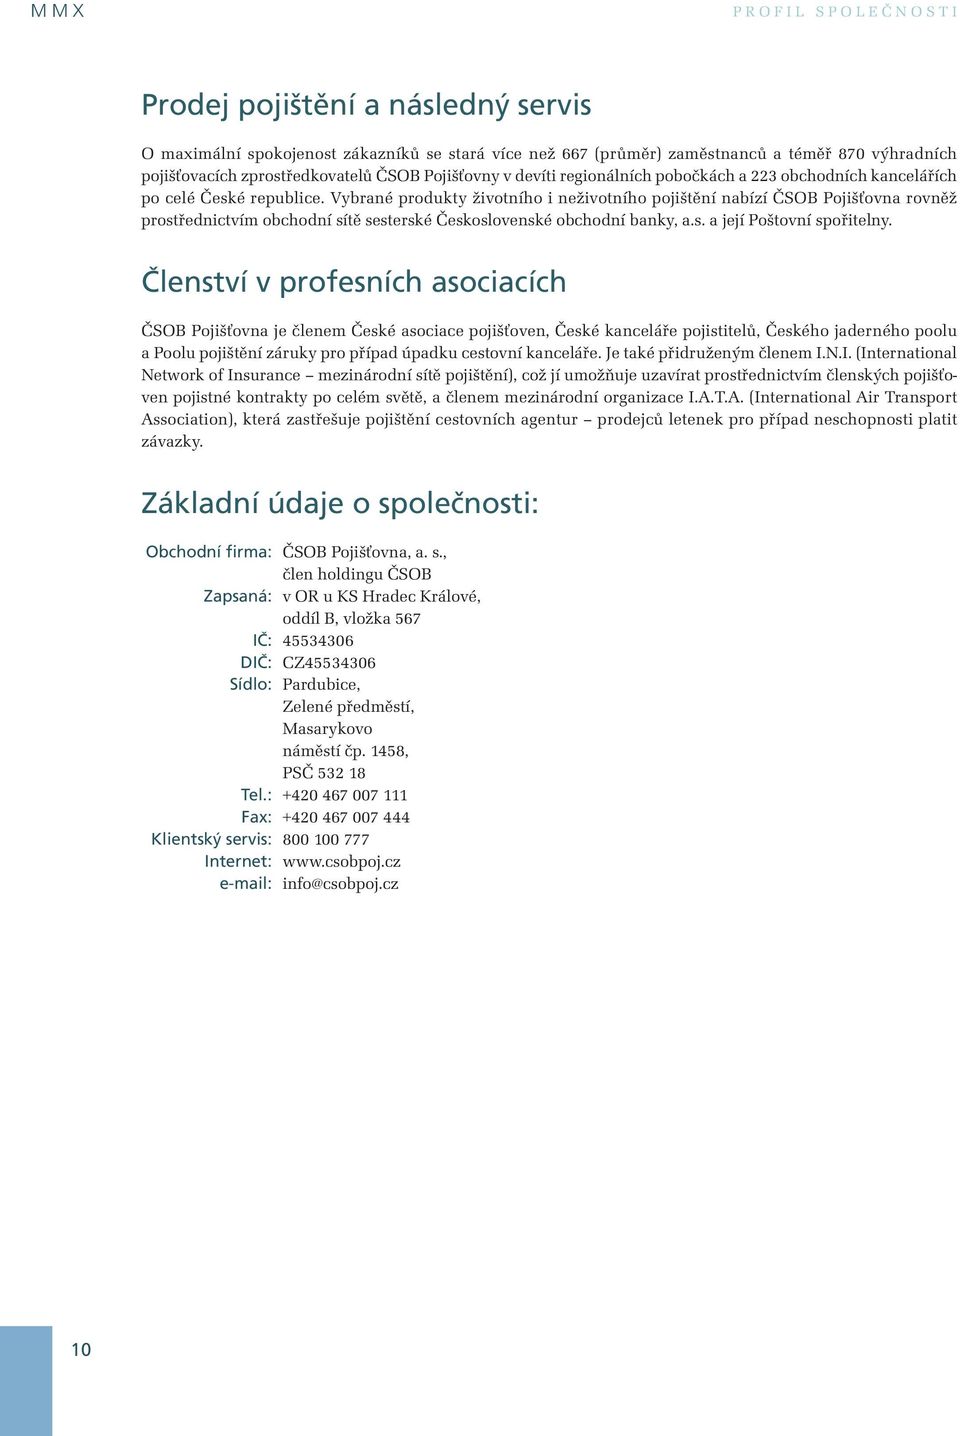 Vybrané produkty životního i neživotního pojištění nabízí ČSOB Pojišťovna rovněž prostřednictvím obchodní sítě sesterské Československé obchodní banky, a.s. a její Poštovní spořitelny.